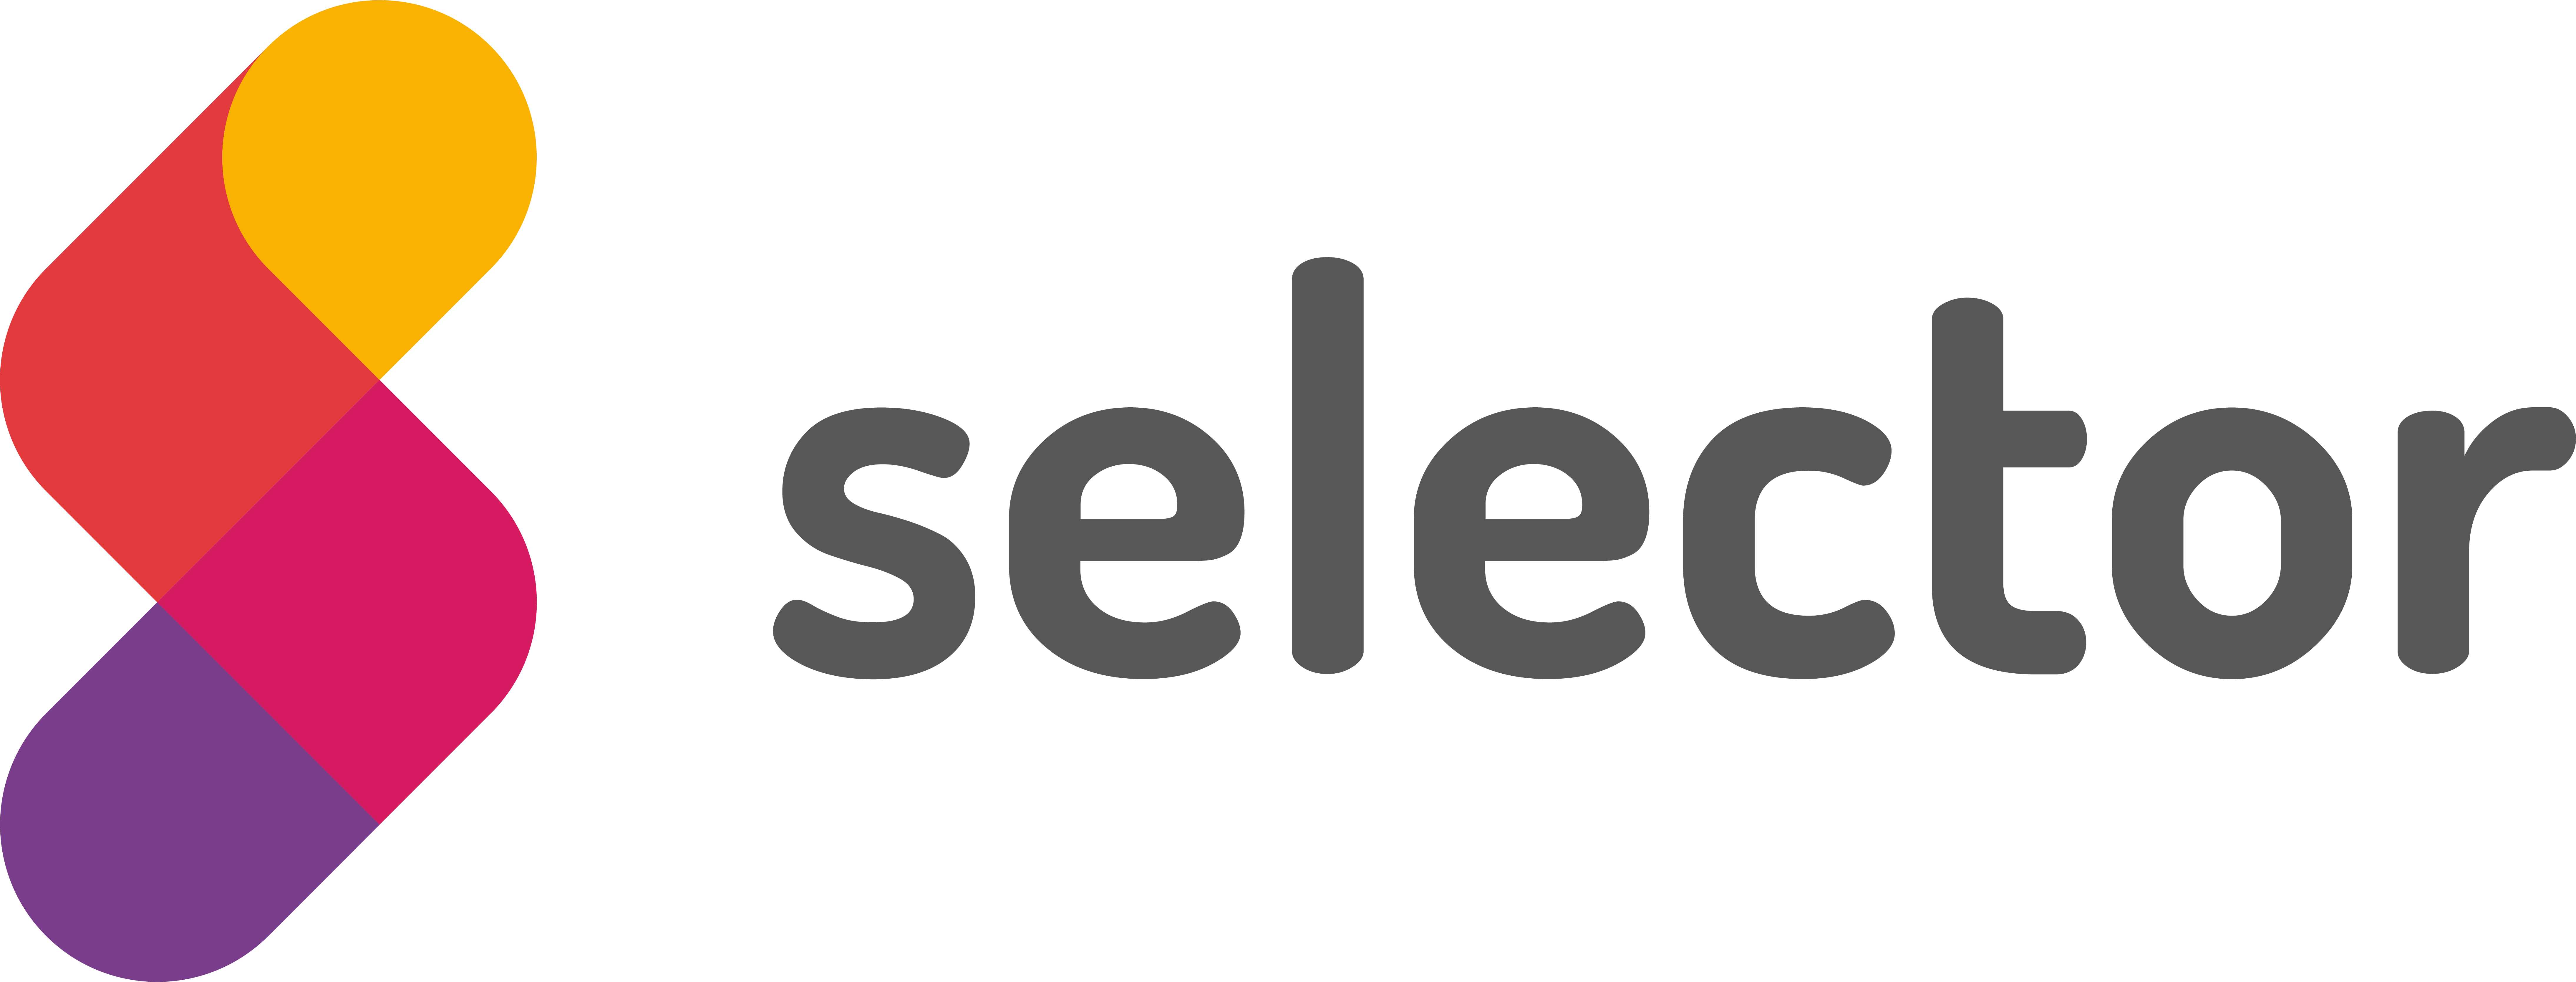 Selector Digital Agency